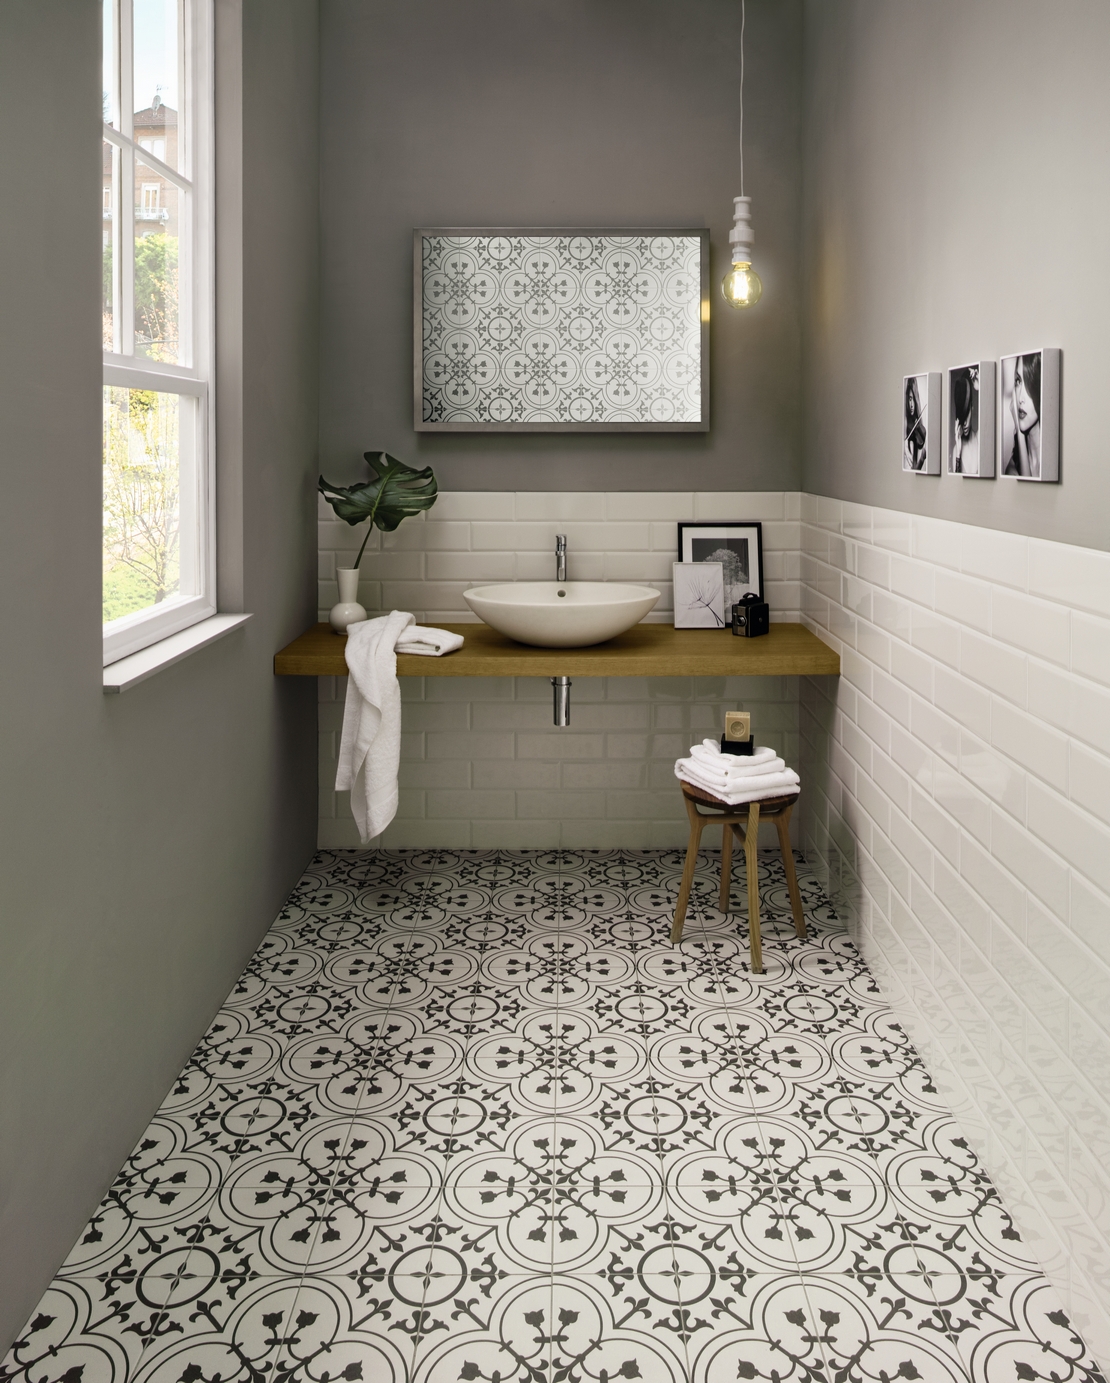 Salle de bains classique au style vintage grâce aux carreaux de ciment en noir et blanc. - Inspirations Iperceramica